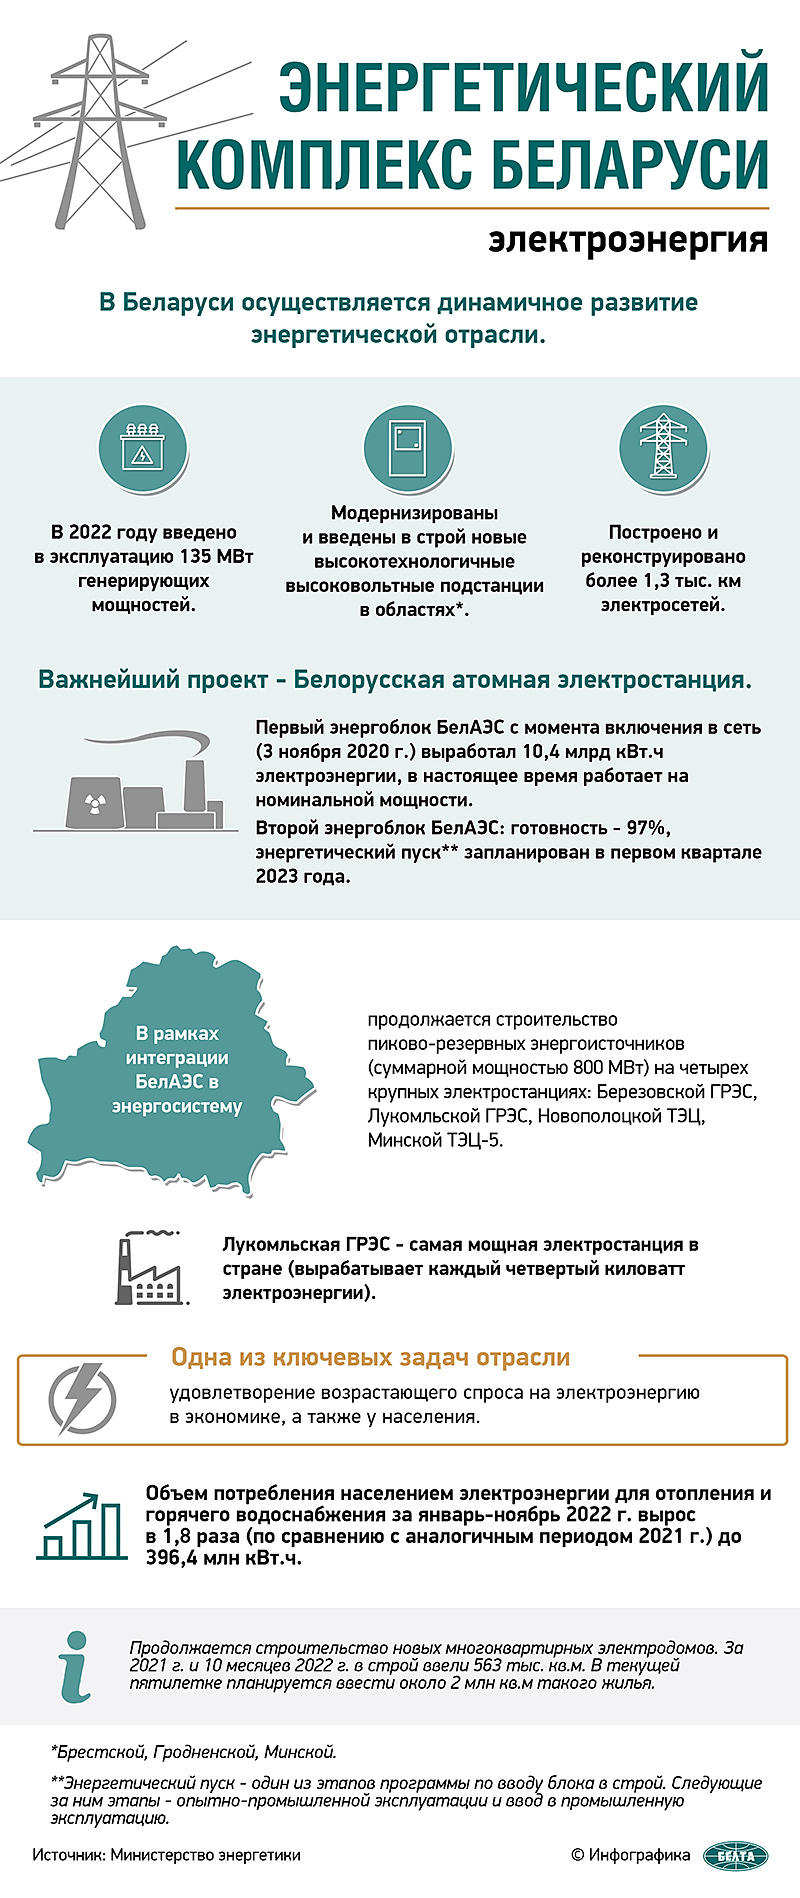 Энергетический комплекс Беларуси: электроэнергия